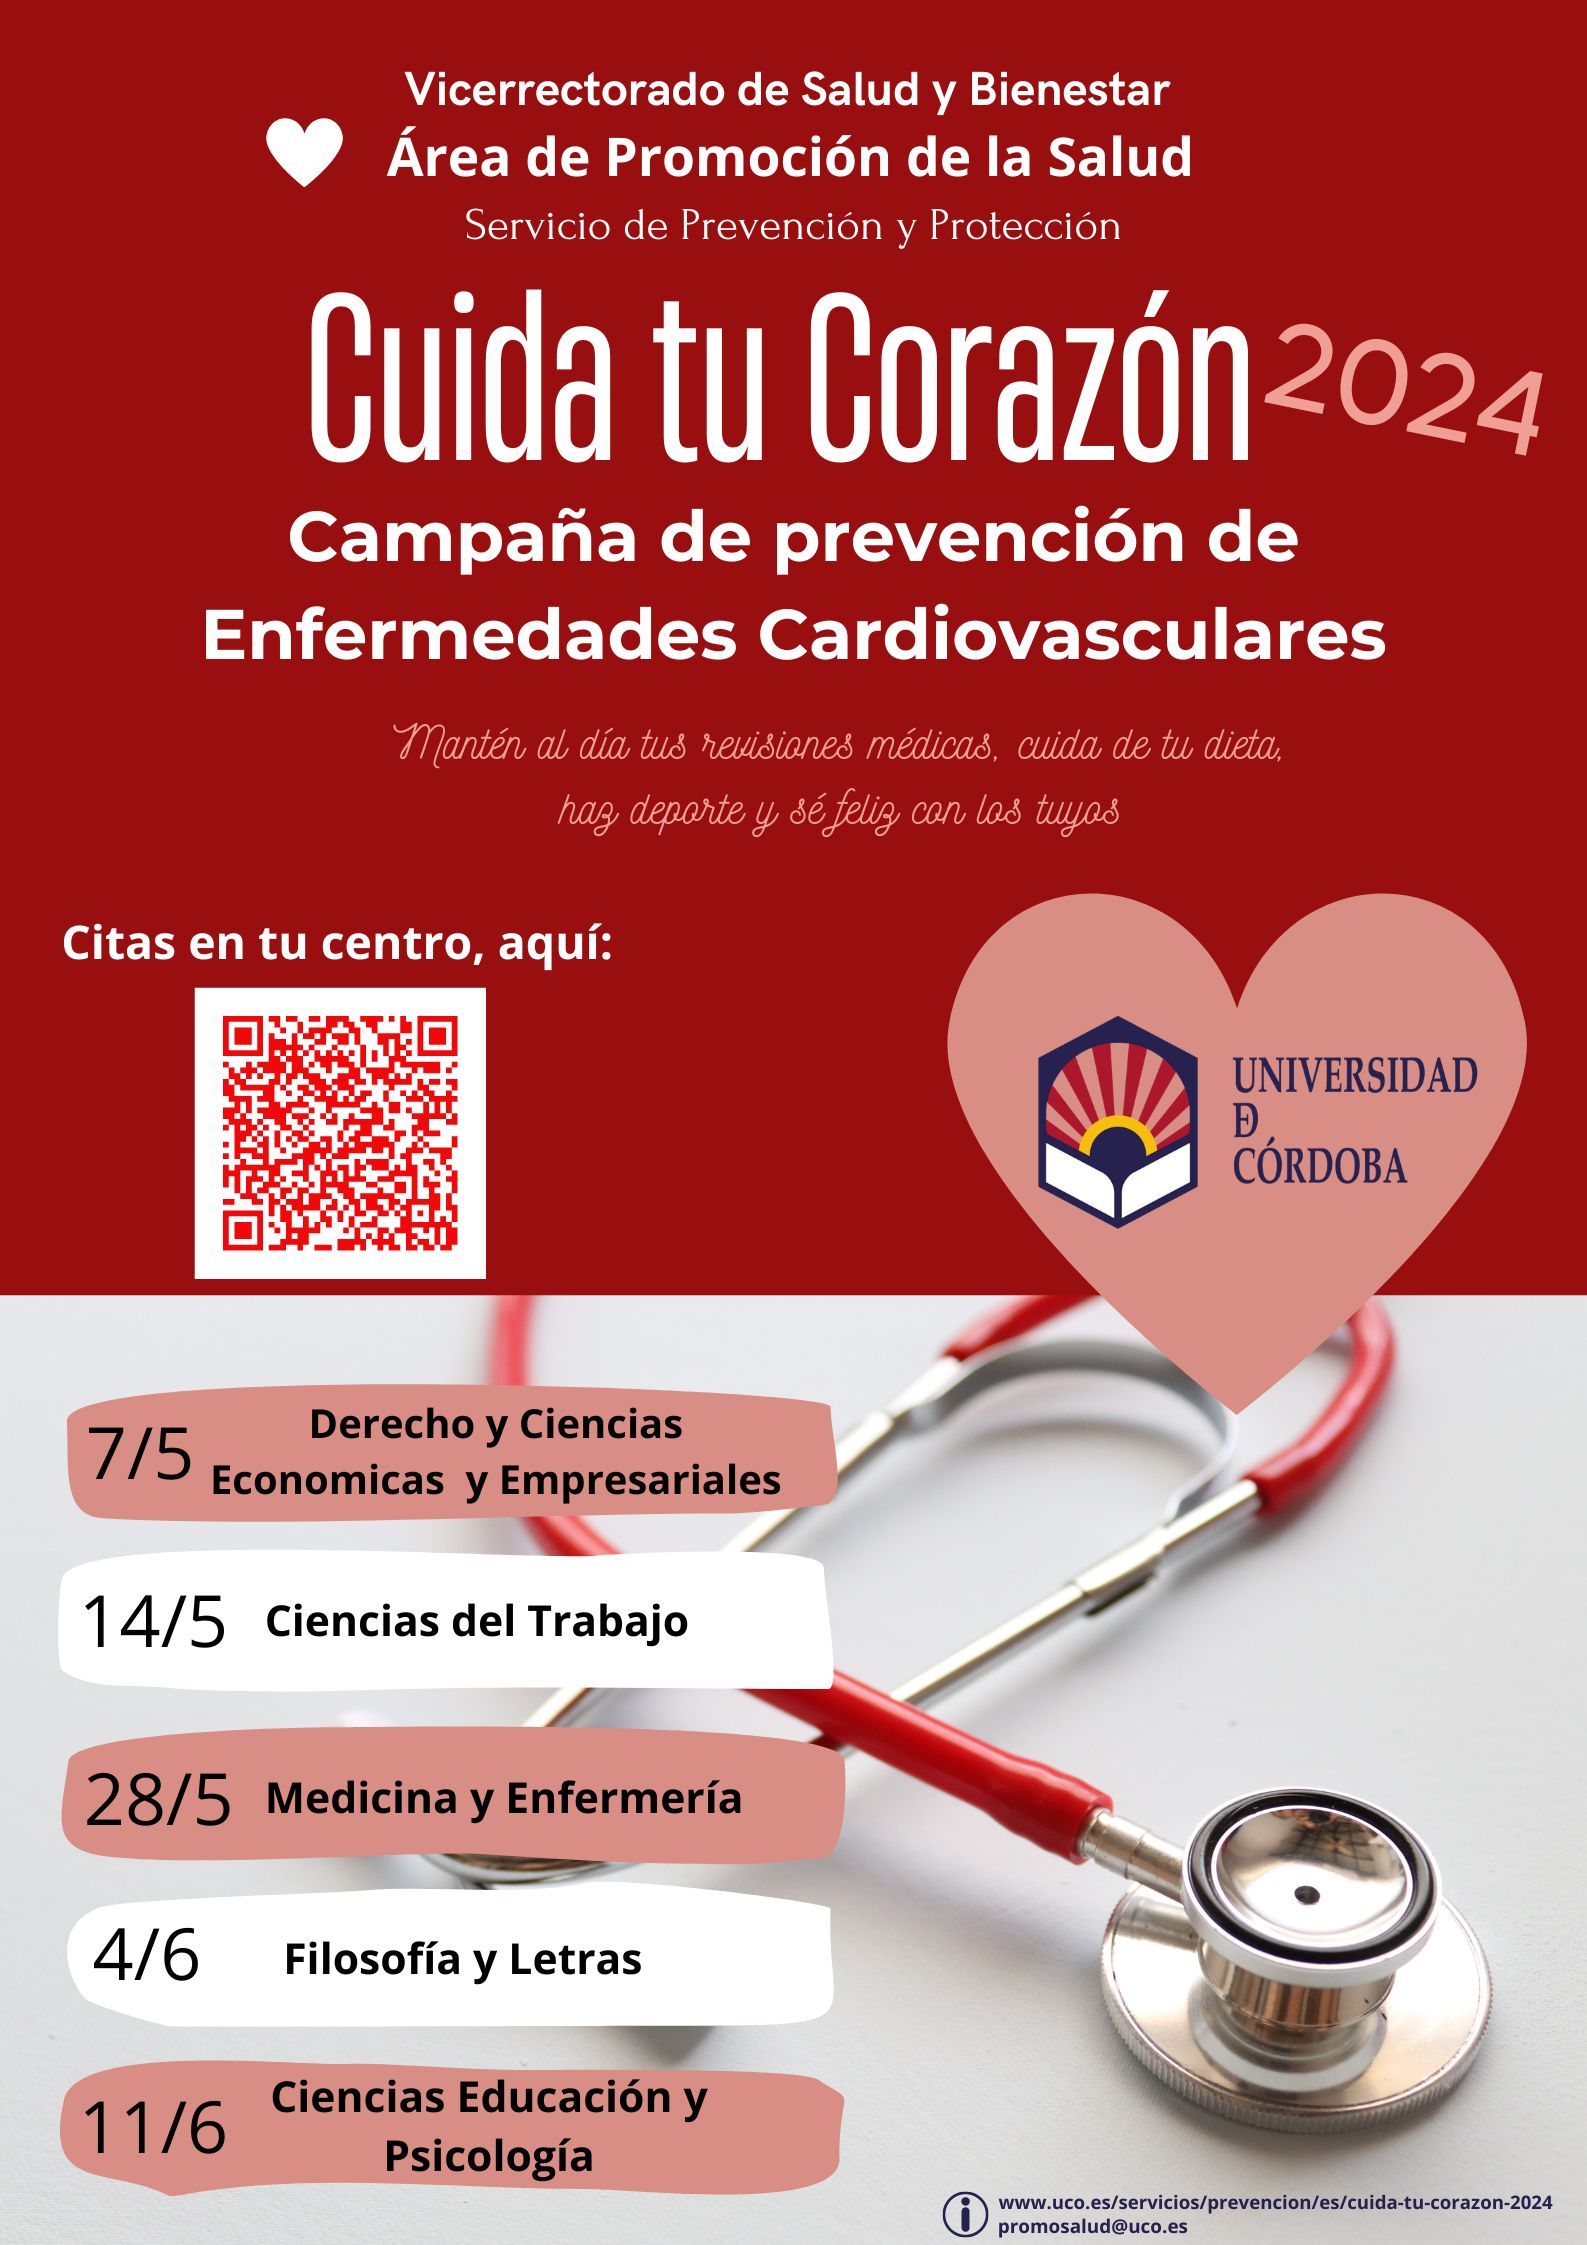 Campana de prevención de enfermedades cardiovasculares